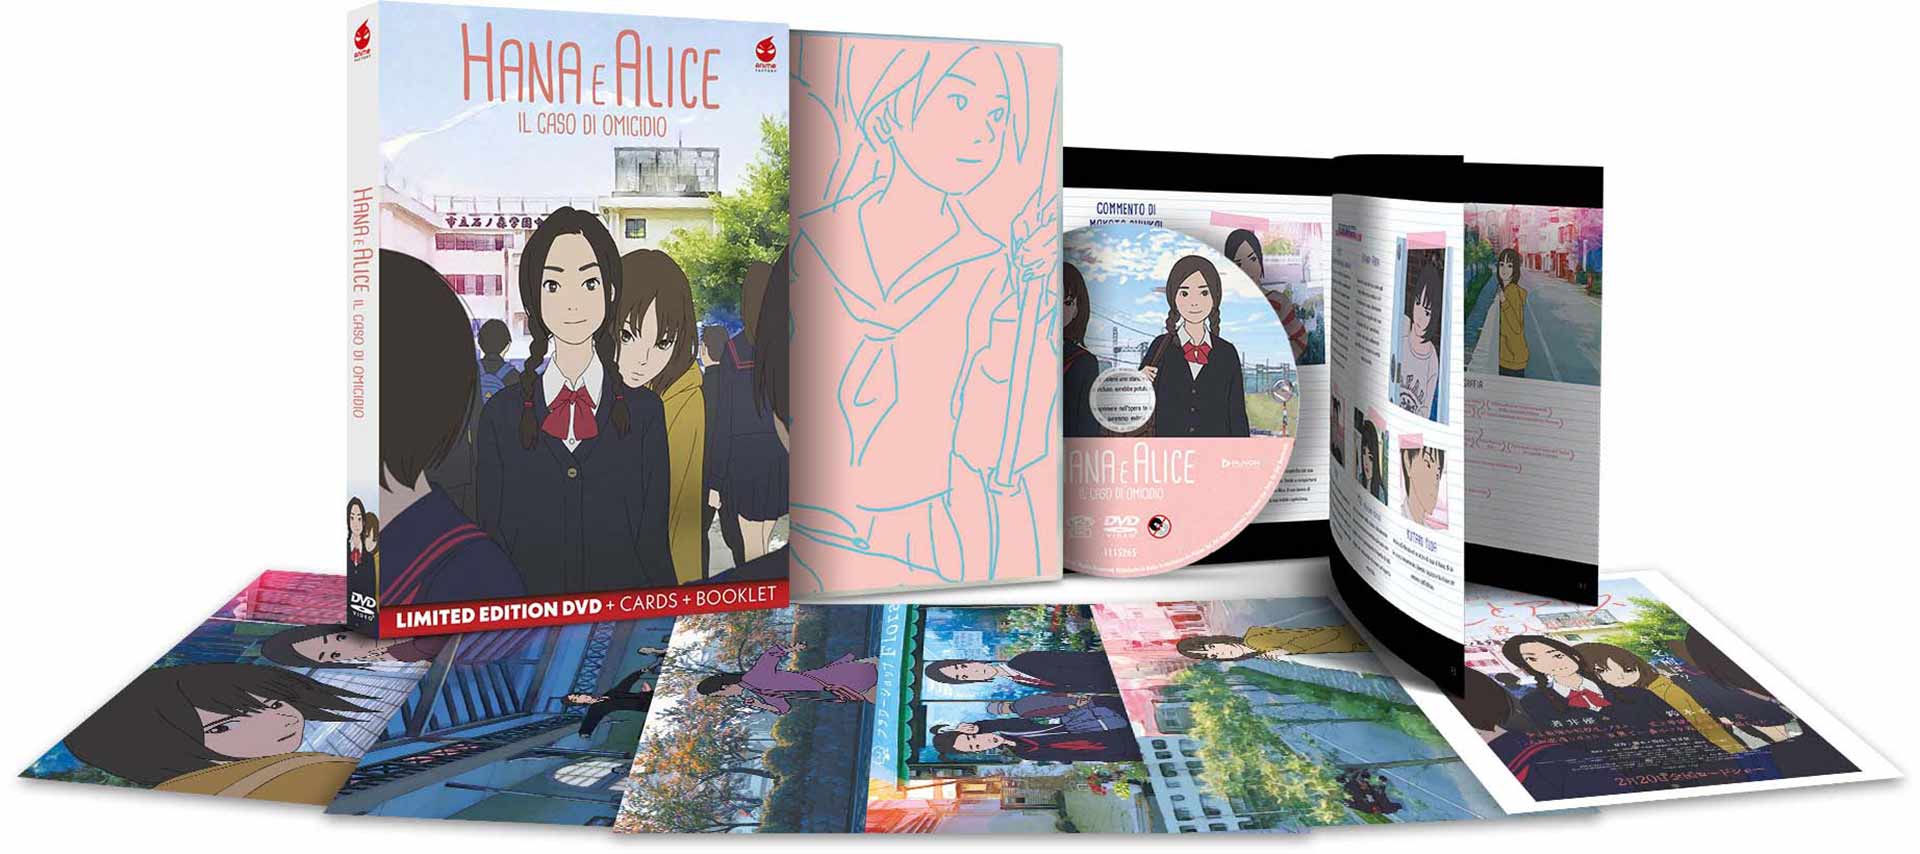 Hana e Alice - Il caso di omicidio - Limited Edition DVD + Cards + Booklet (DVD) Image 4